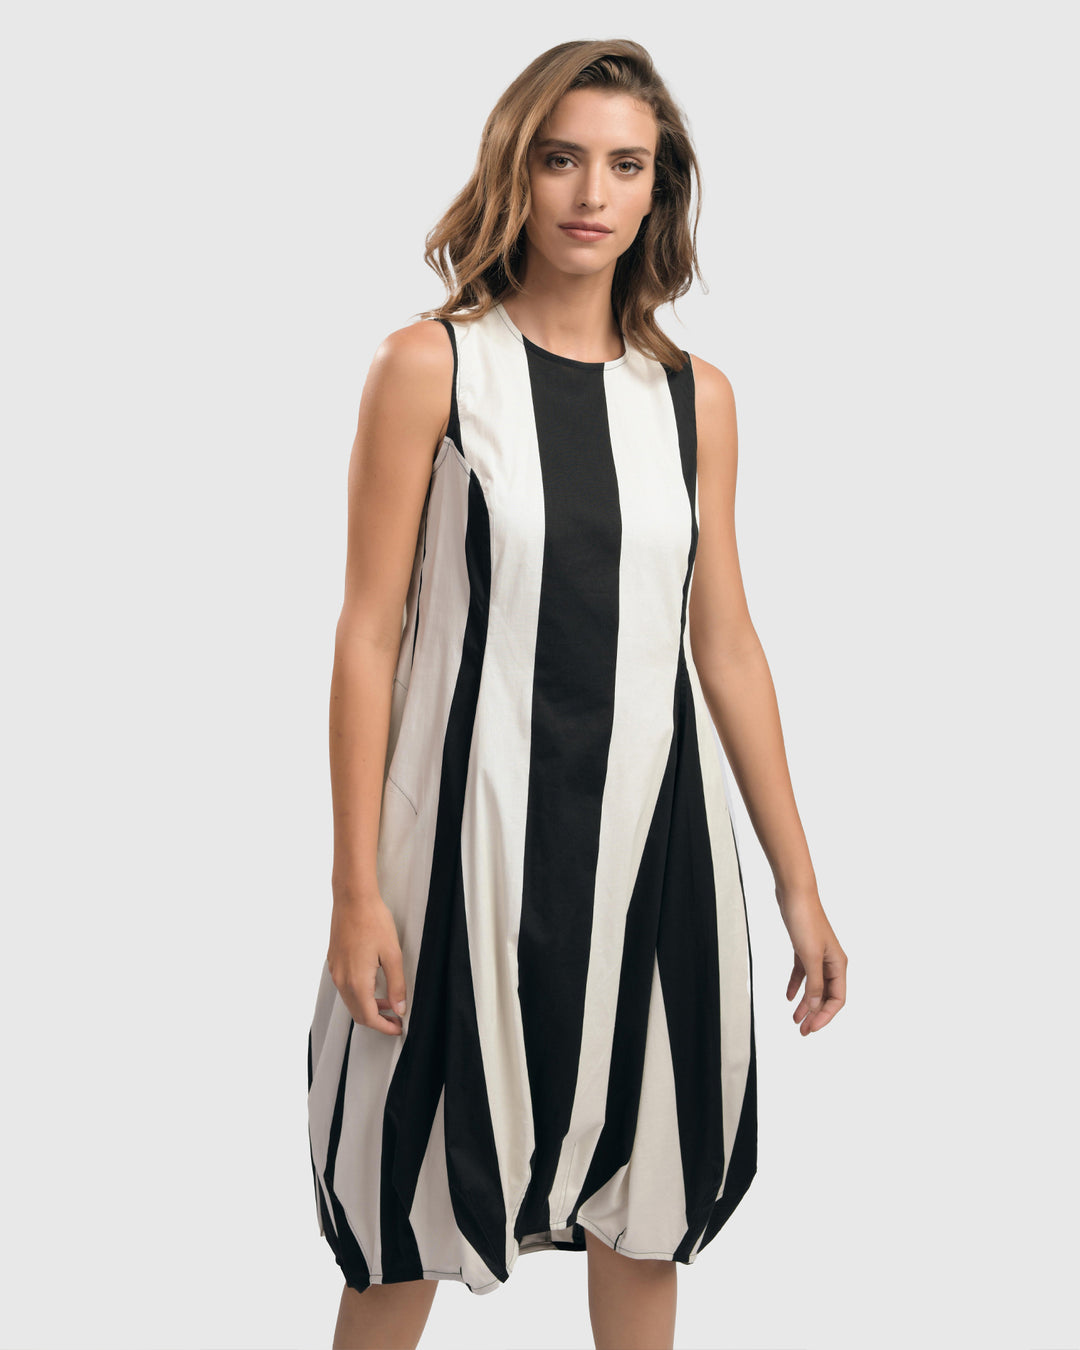 Urban Arden Wonderful Dress, Black/white